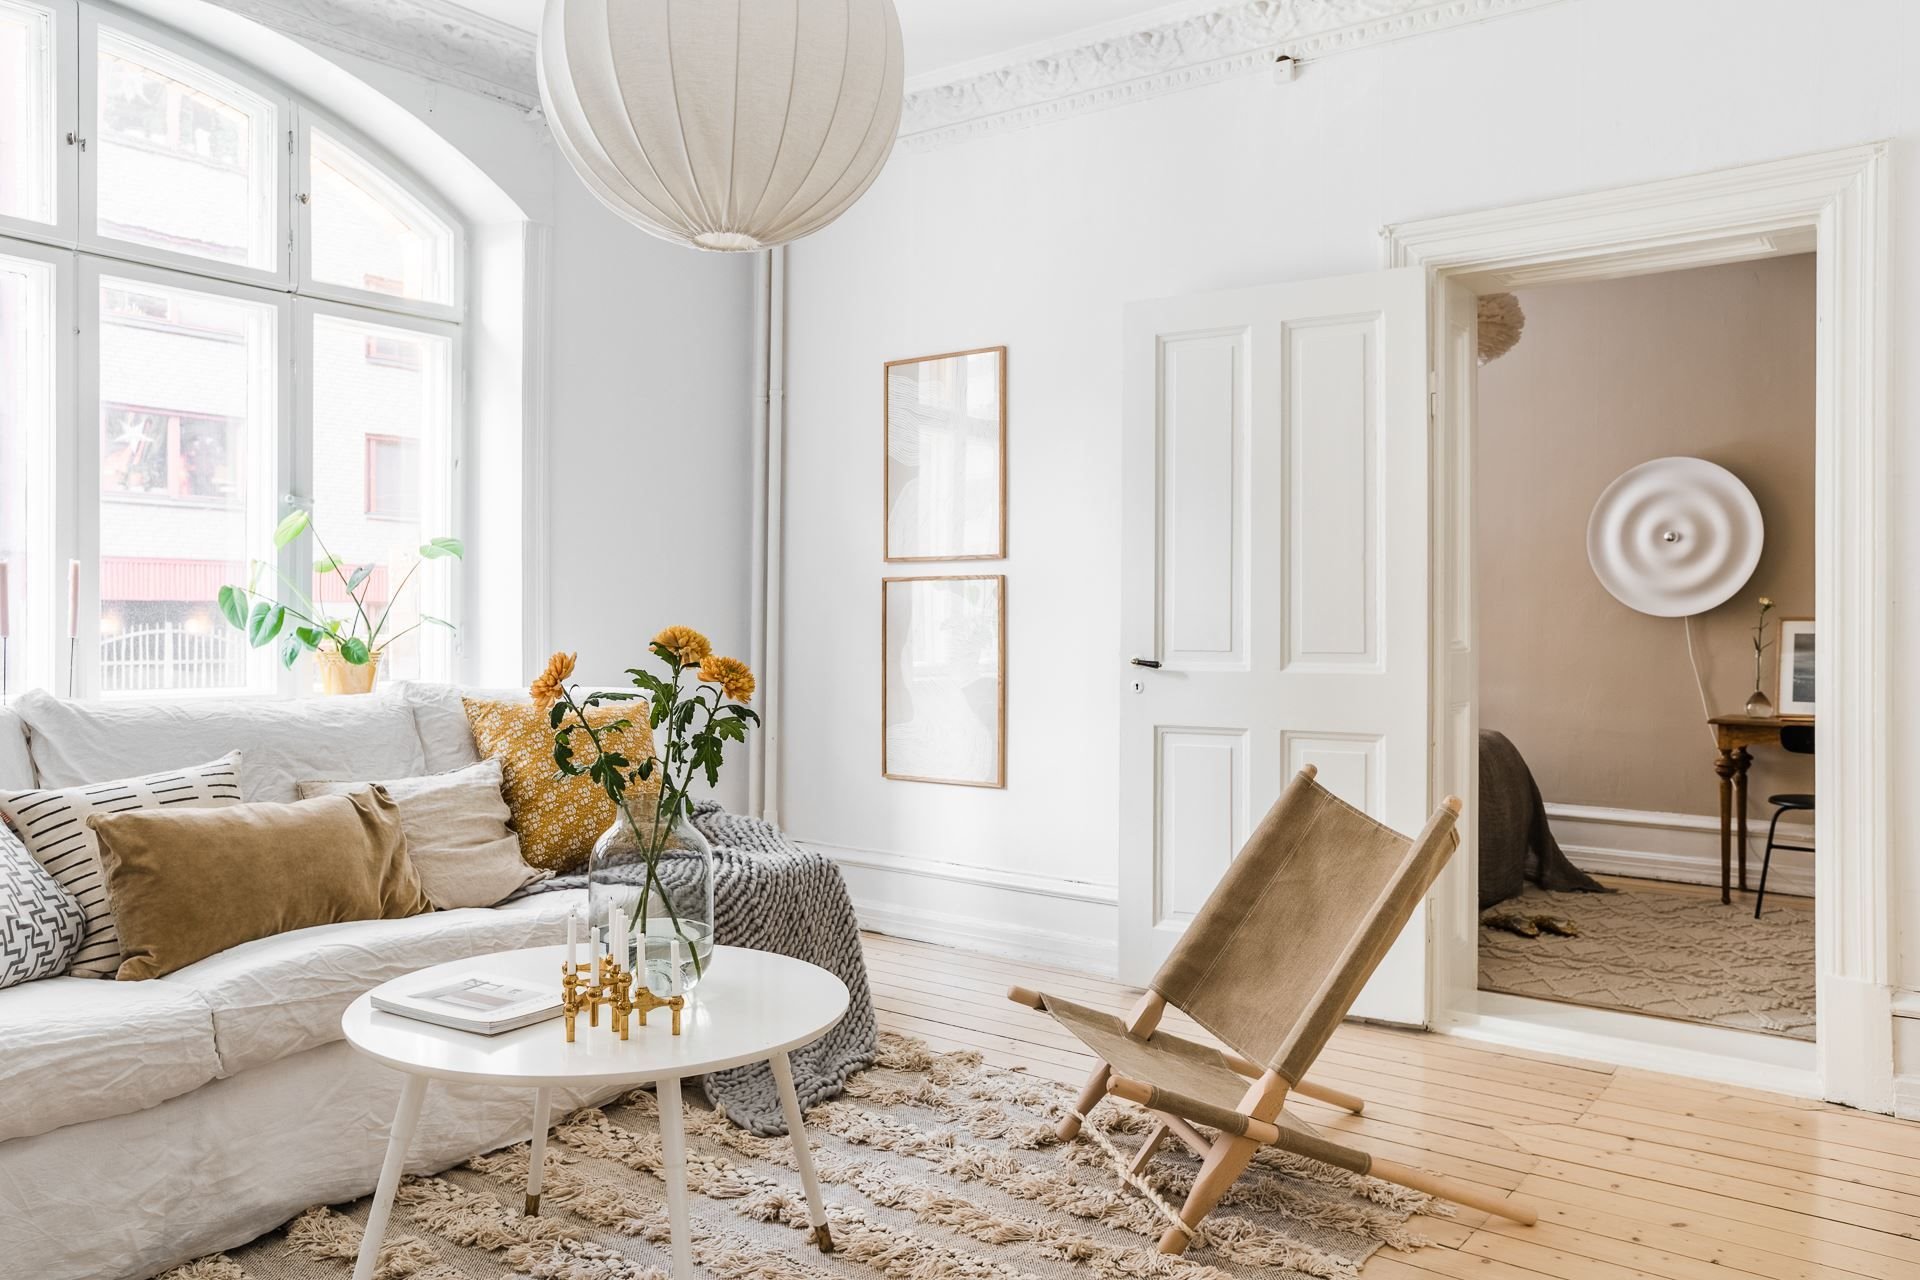 Salon con sofa de linio blanco alfombra y paredes de color blanco. Despeja la casa